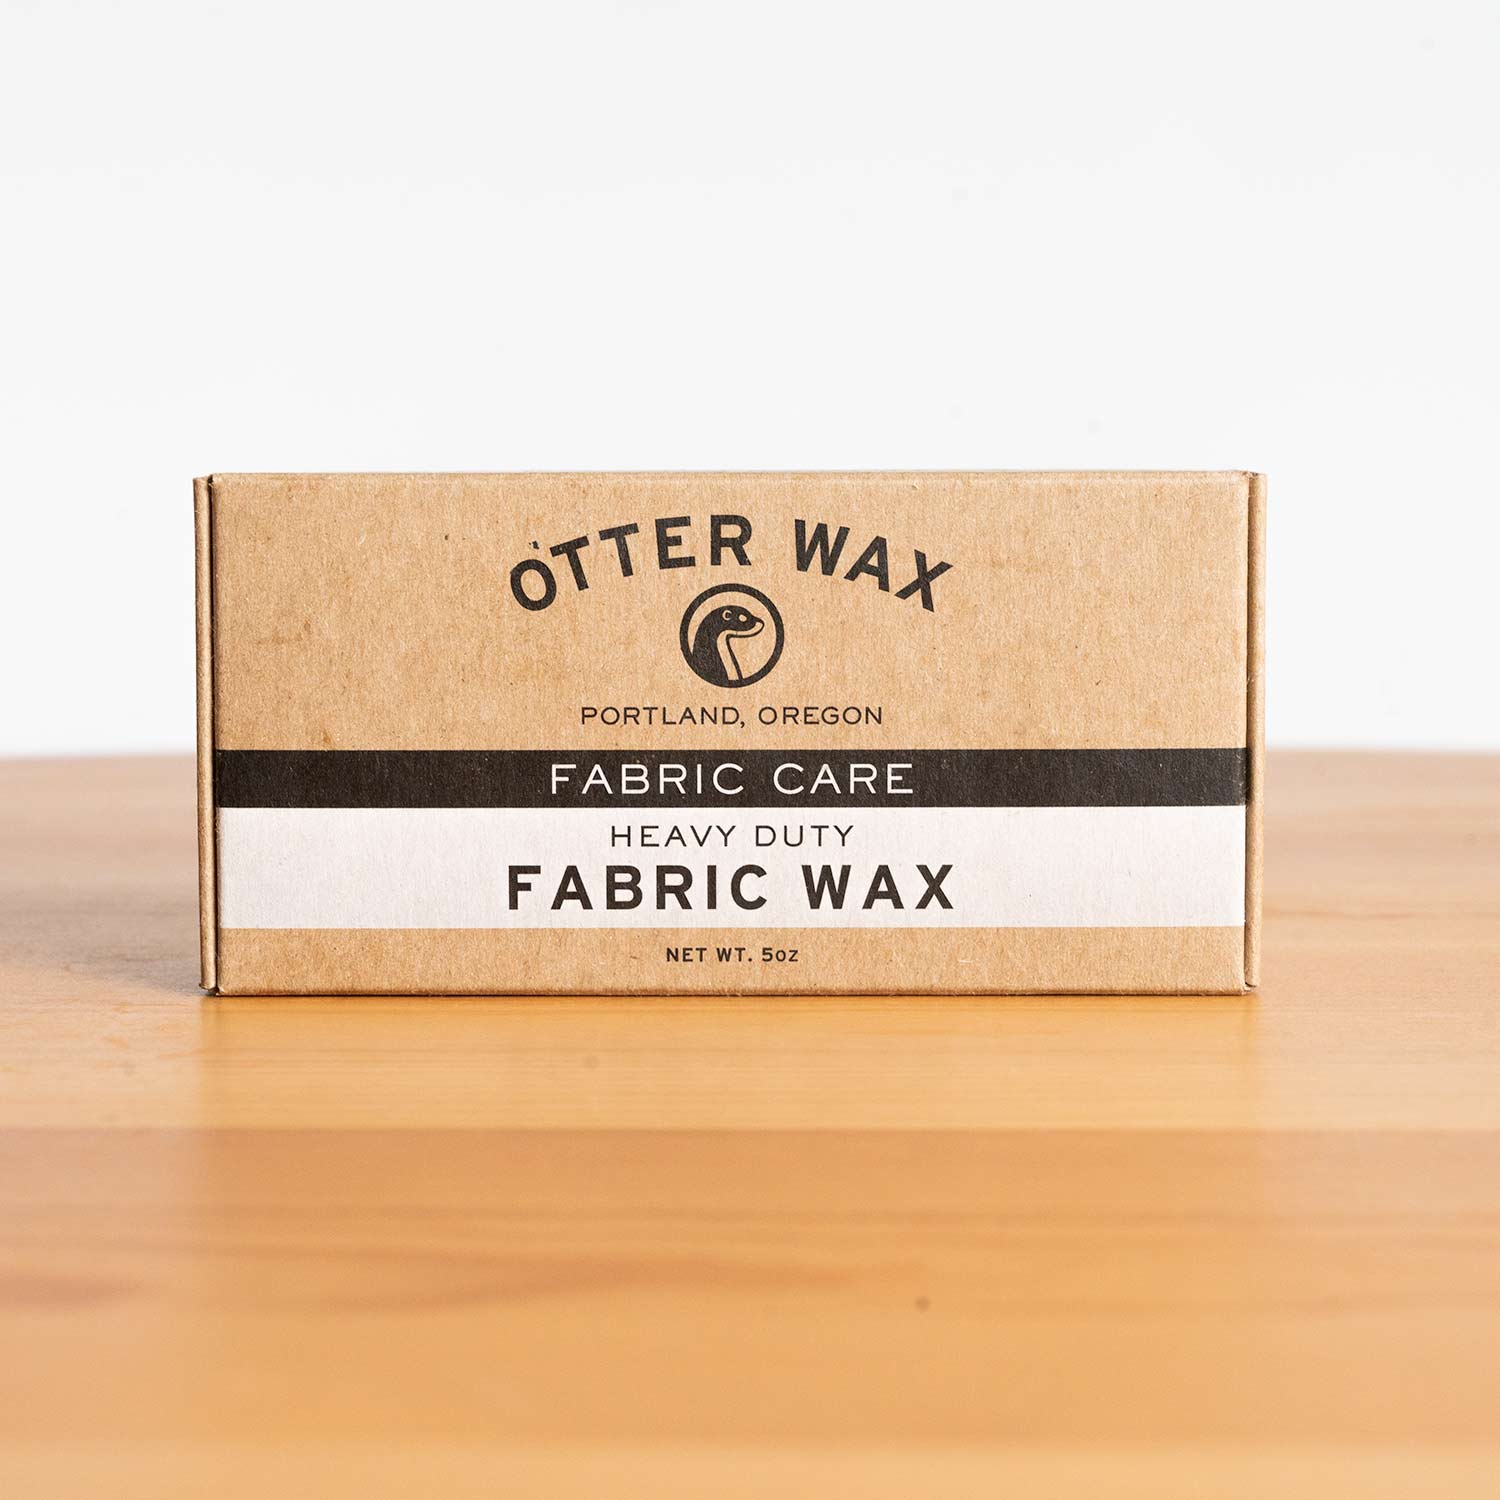 Otter Wax Fabric Wax Large Bar 5oz